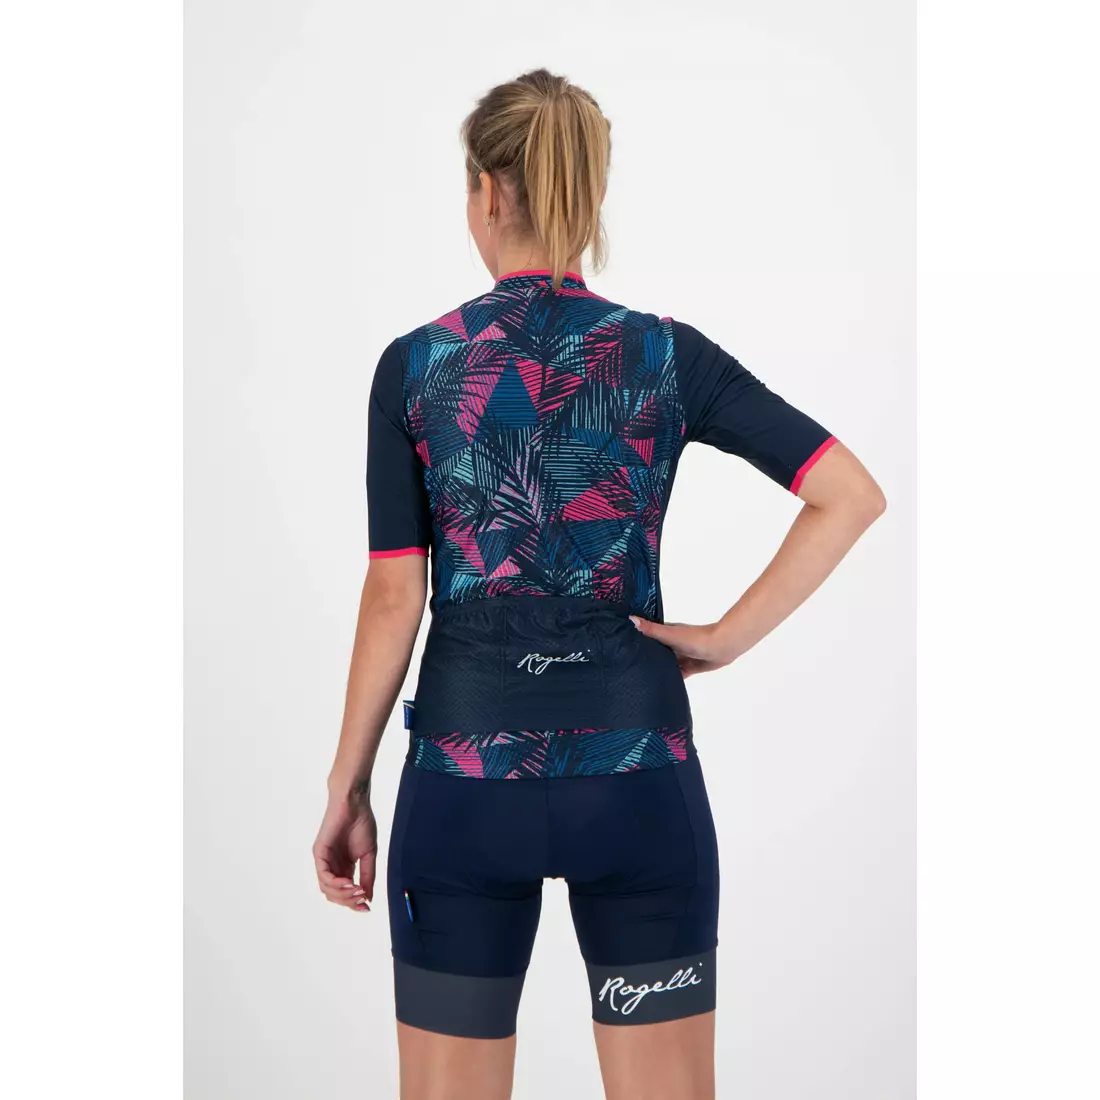 ROGELLI women's cycling jersey LEAF blue 010.085